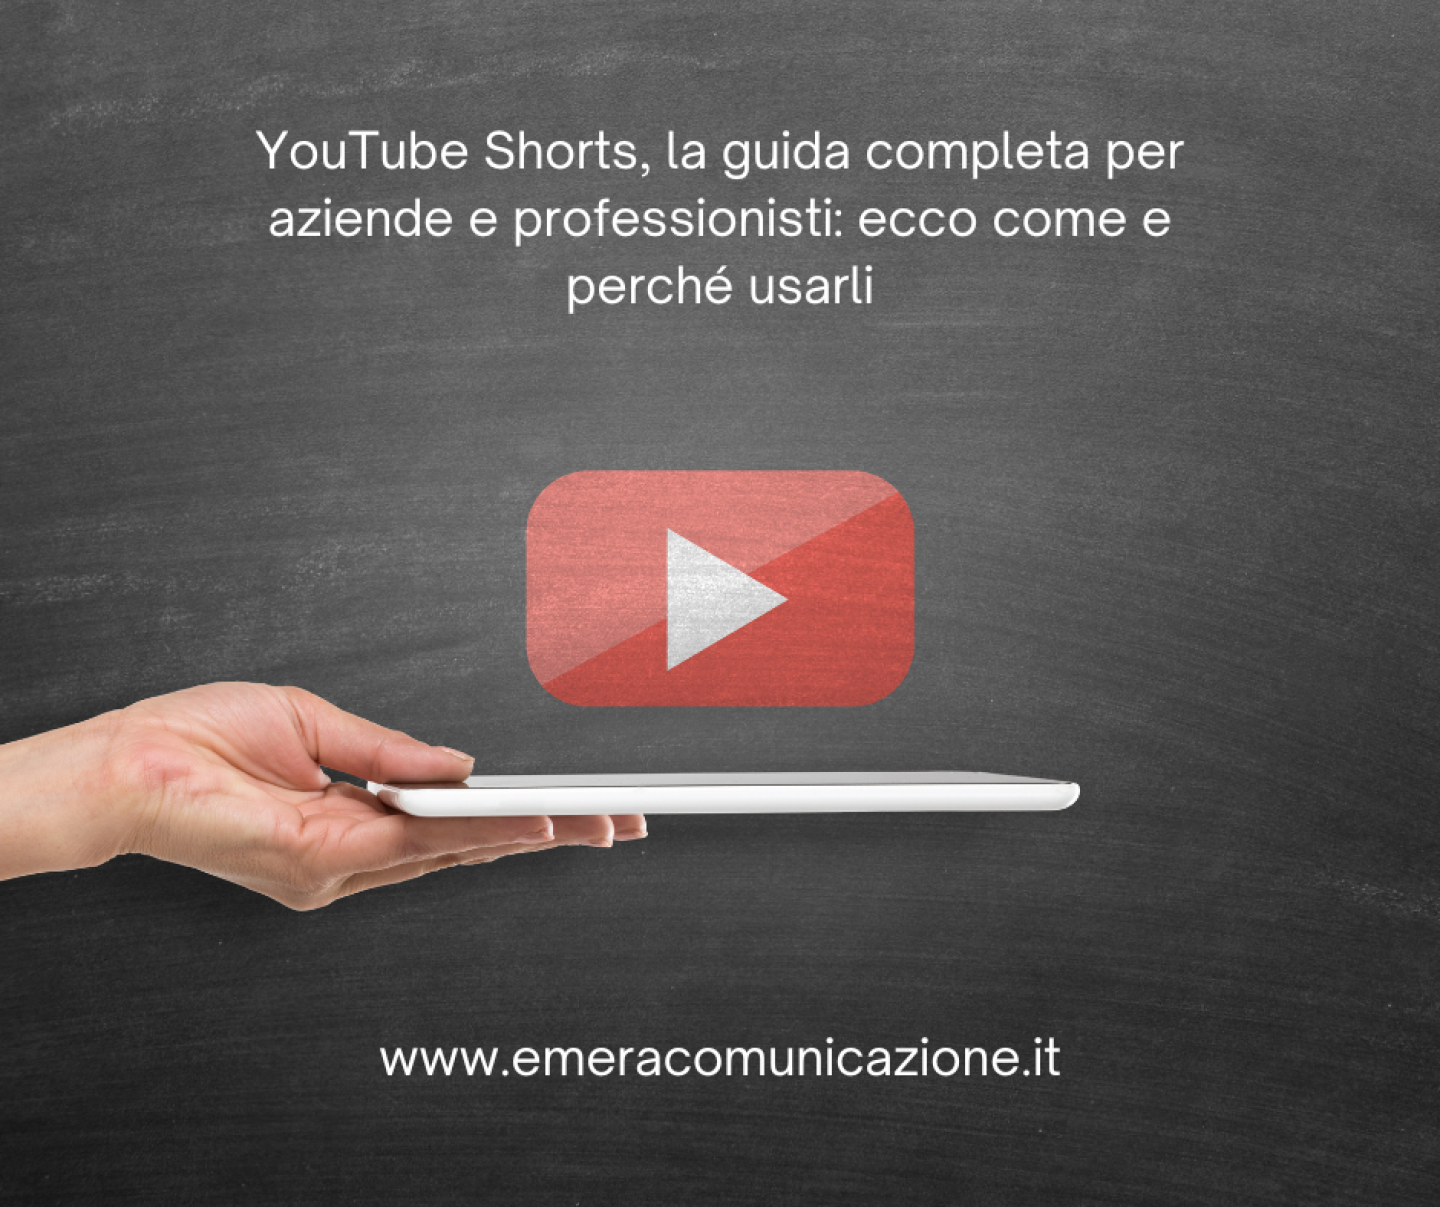 YouTube Shorts, la guida completa per aziende e professionisti ecco come e perché usarli